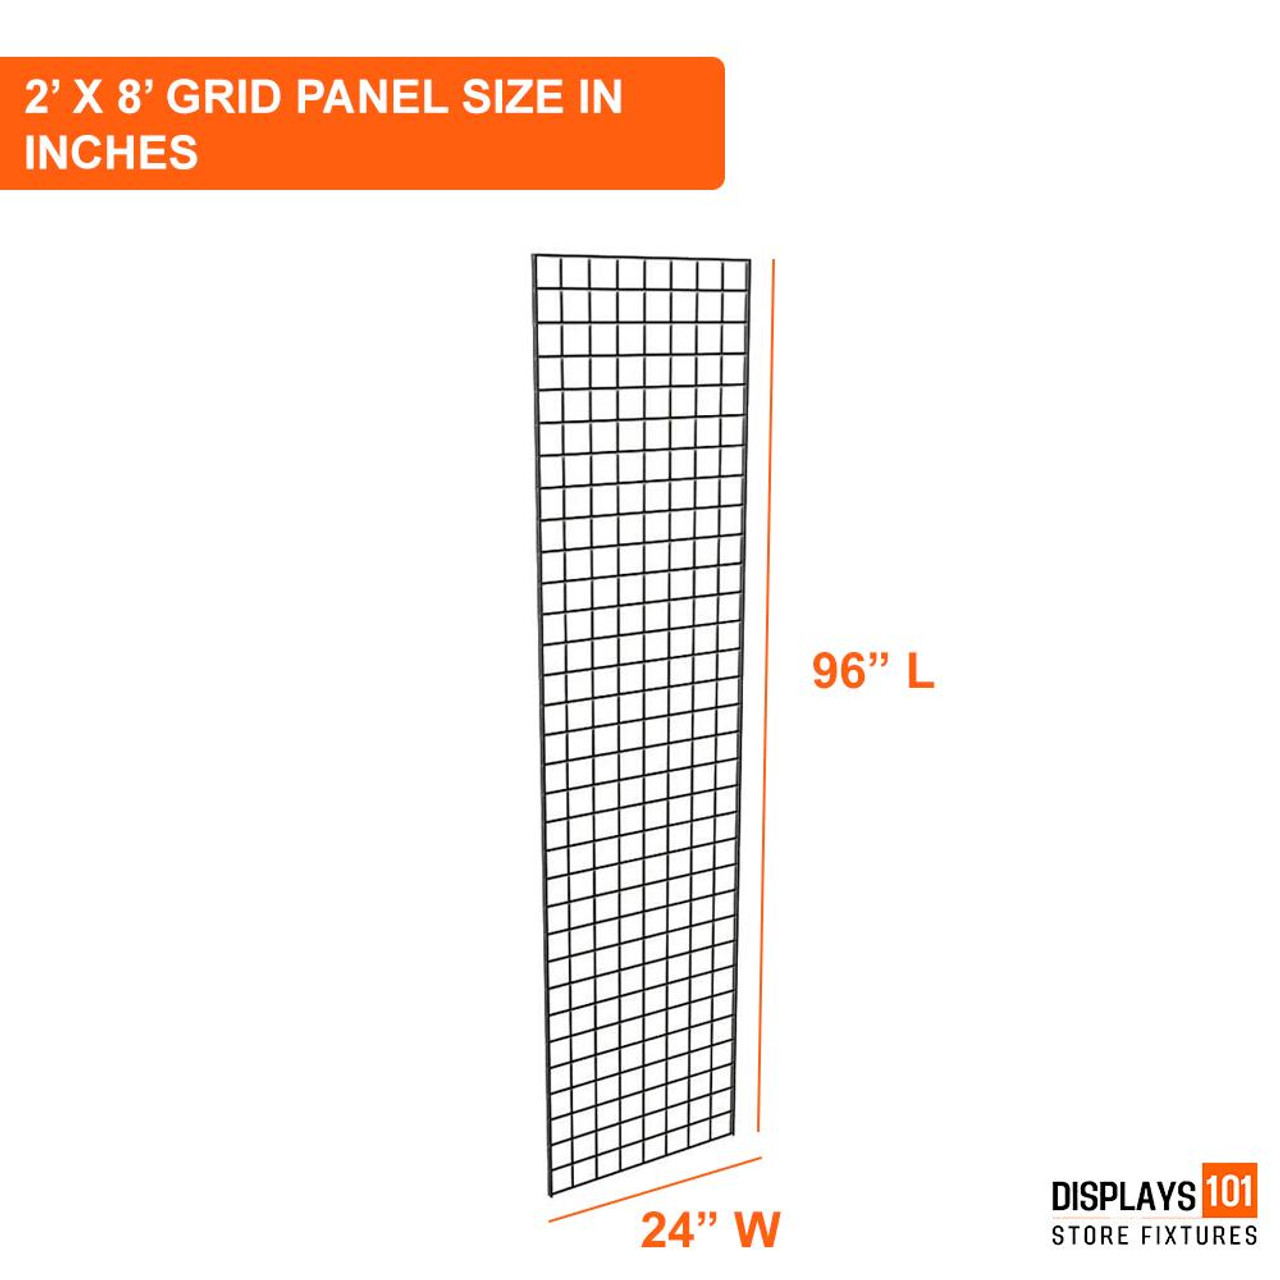 Displays 101 2' x 8'  Gridwall Panels 